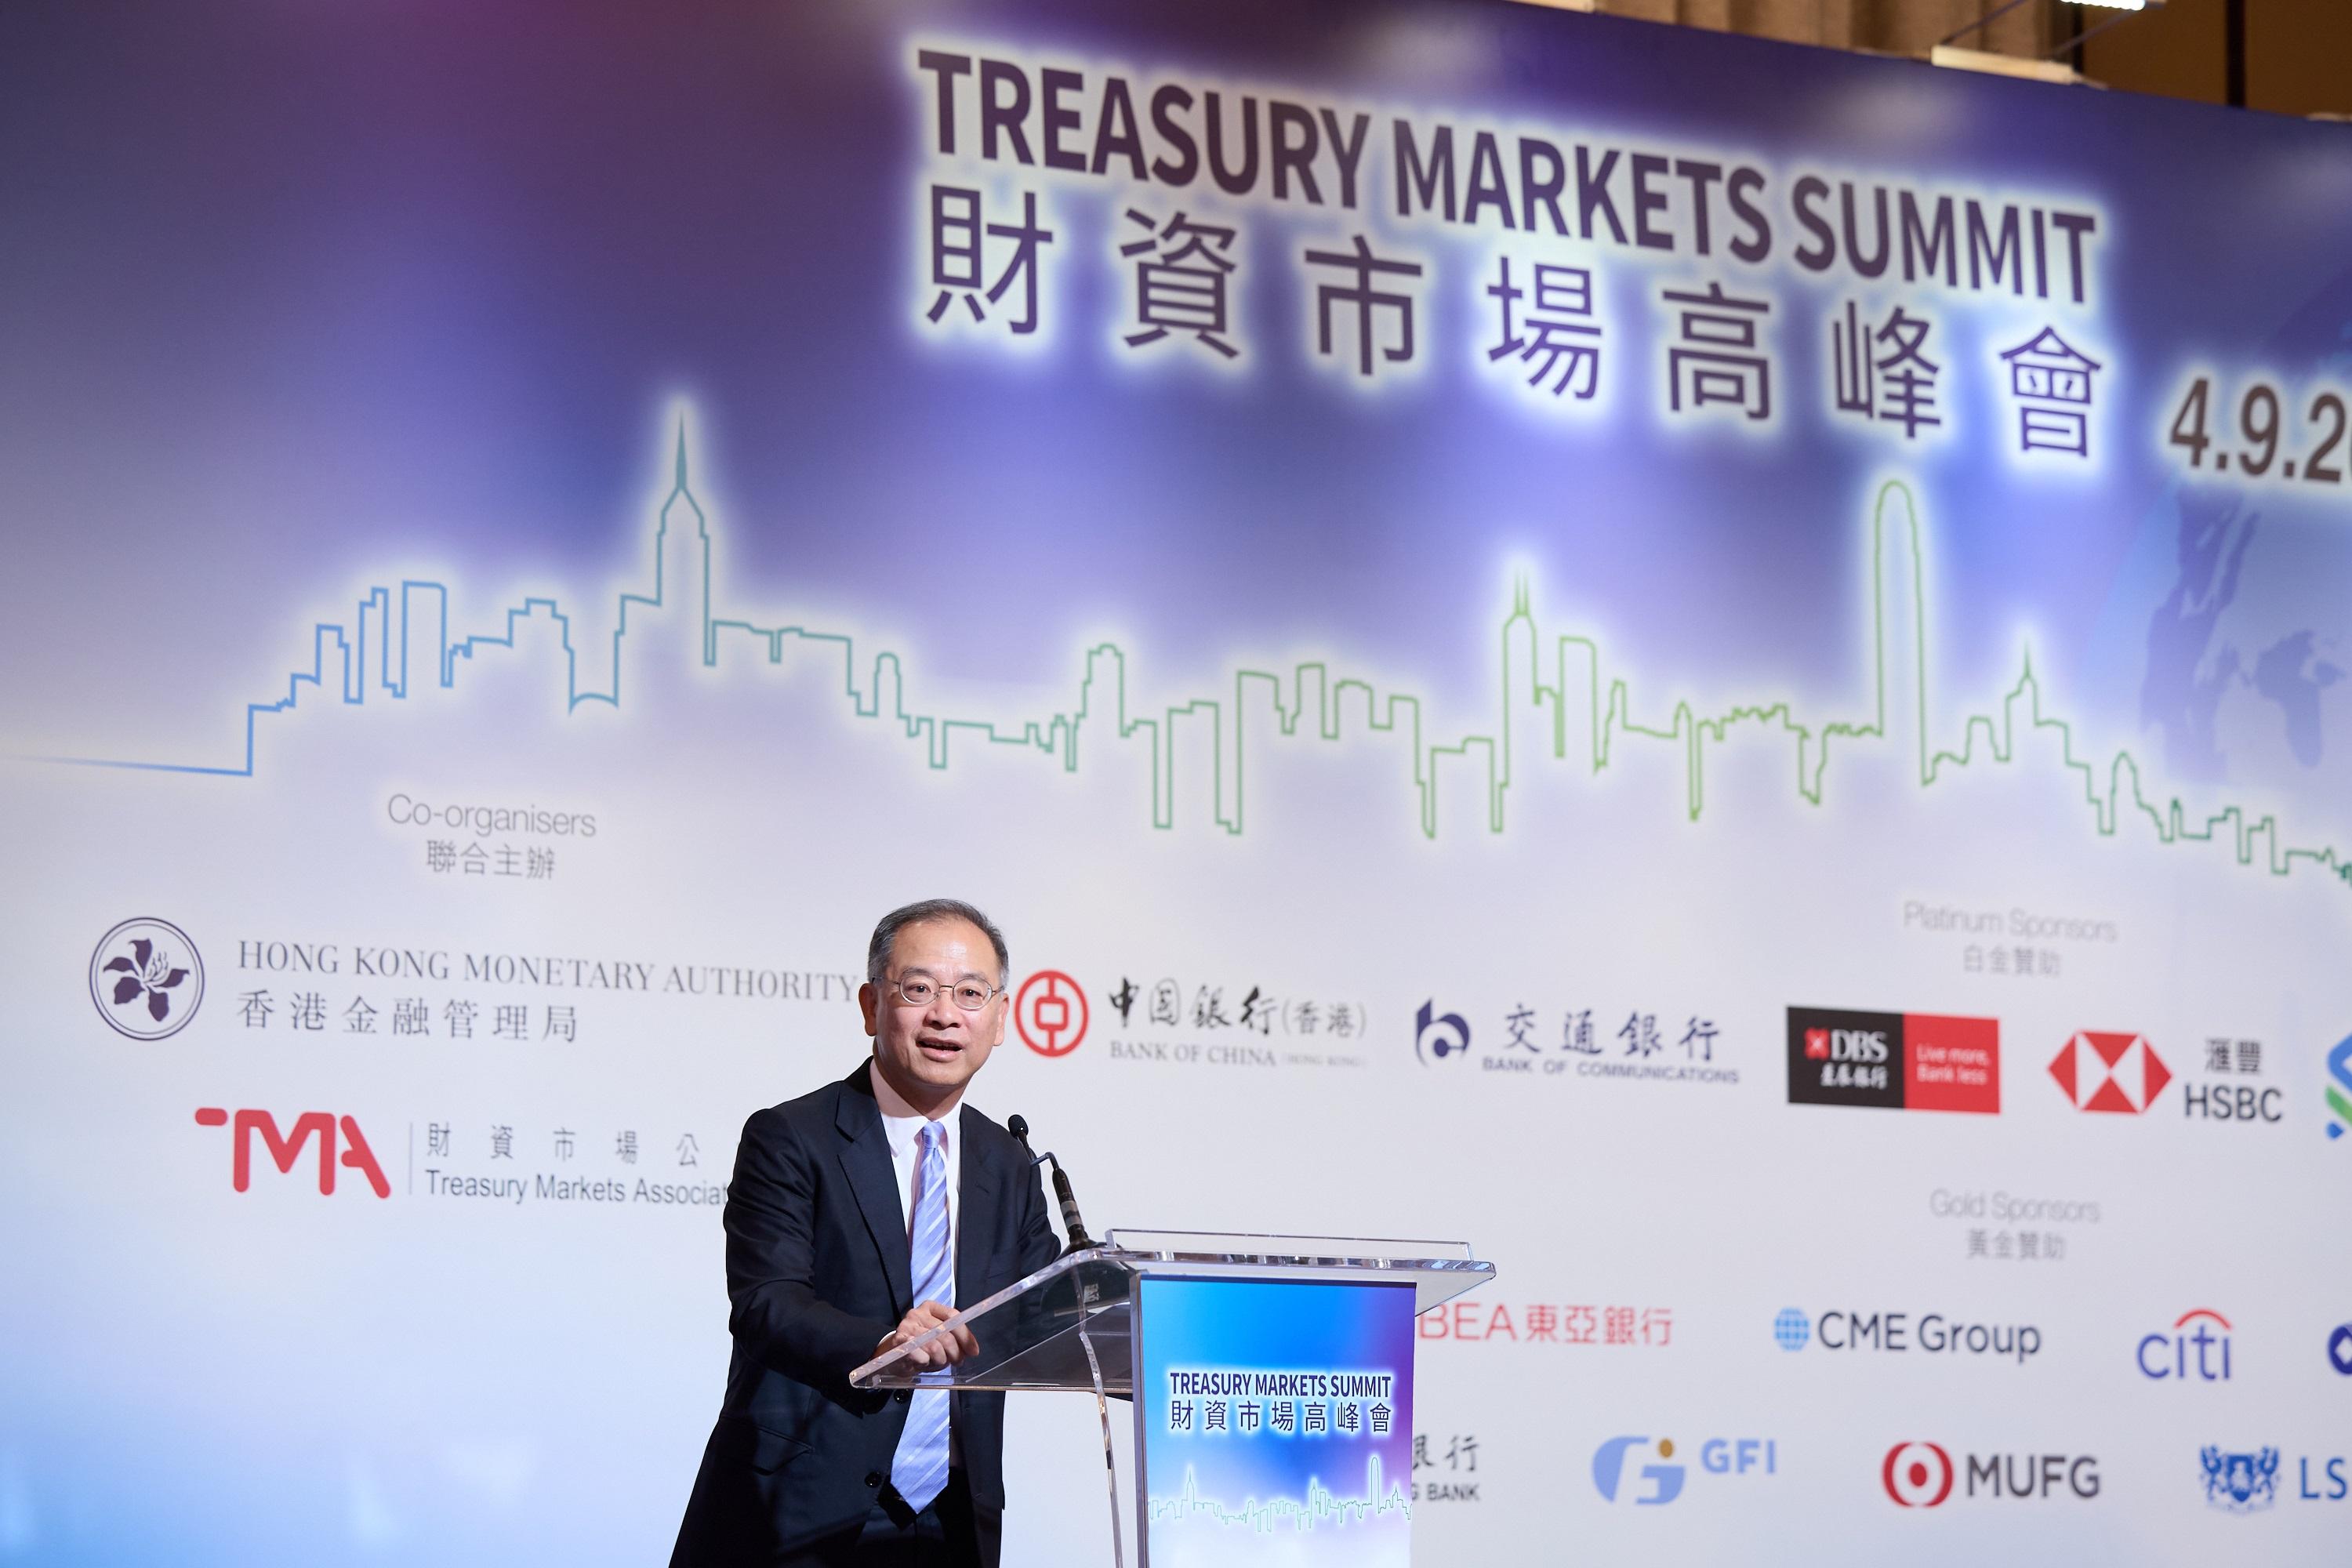 香港金融管理局总裁兼财资市场公会议会荣誉会长余伟文今日（九月四日）在香港举行的2023财资市场高峰会上致欢迎词及发表主题演讲。